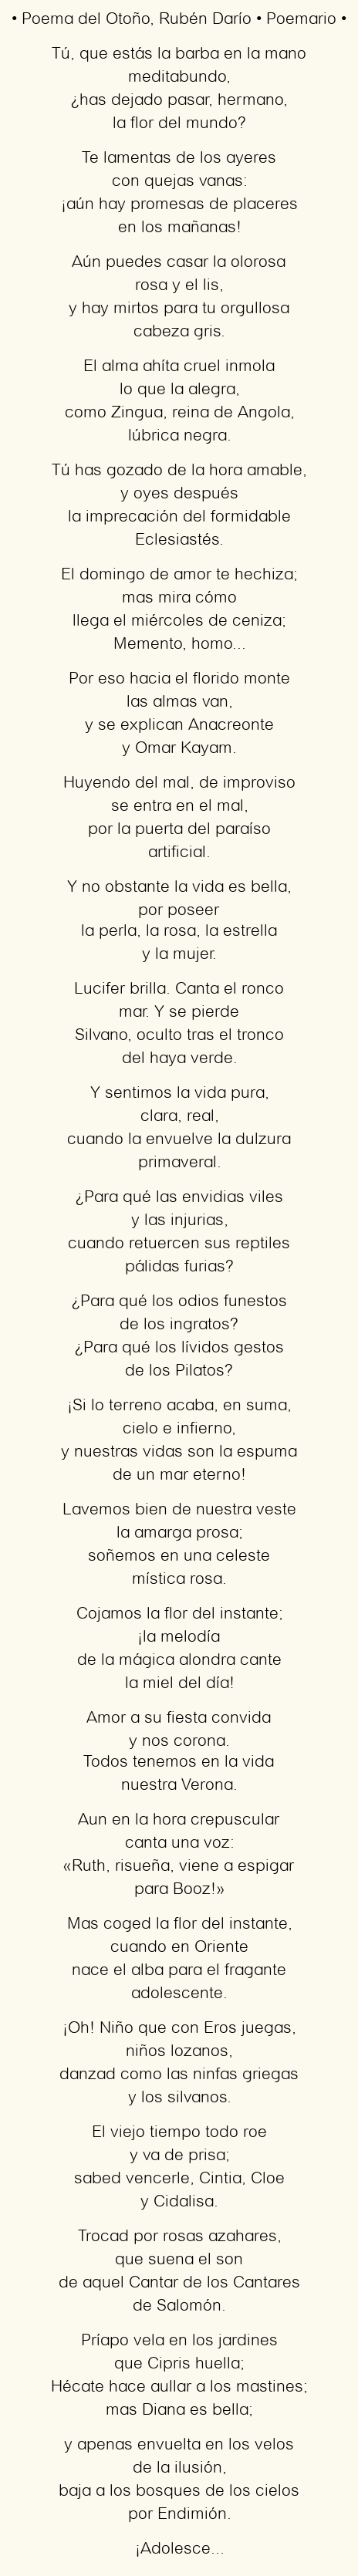 Imagen con el poema Poema del Otoño, por Rubén Darío